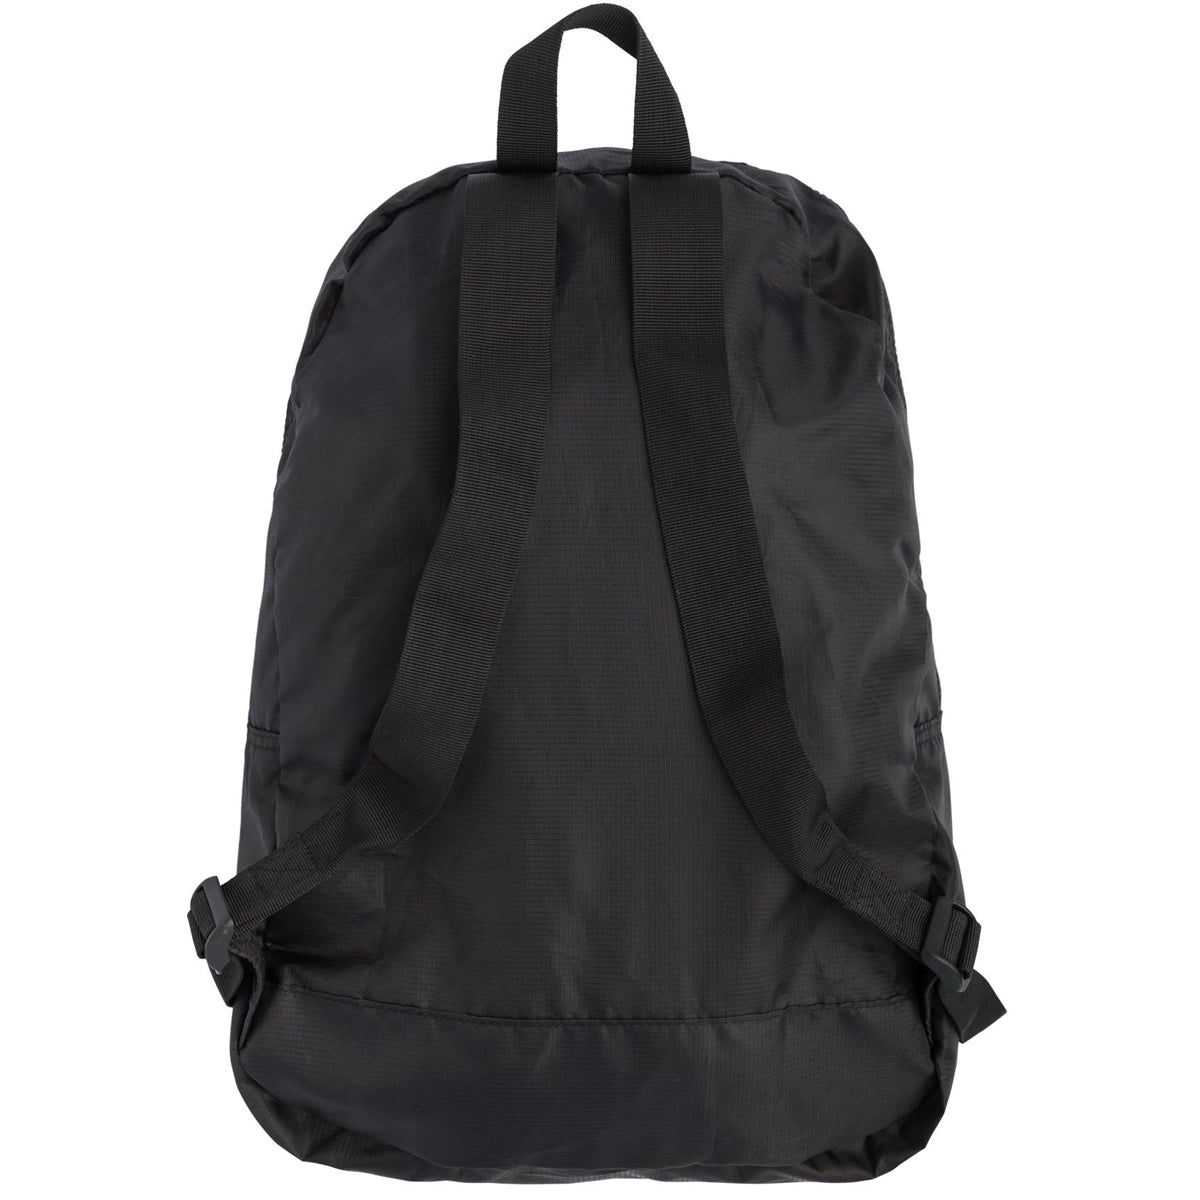 Independent BTG Pattern Backpack - Black image 2